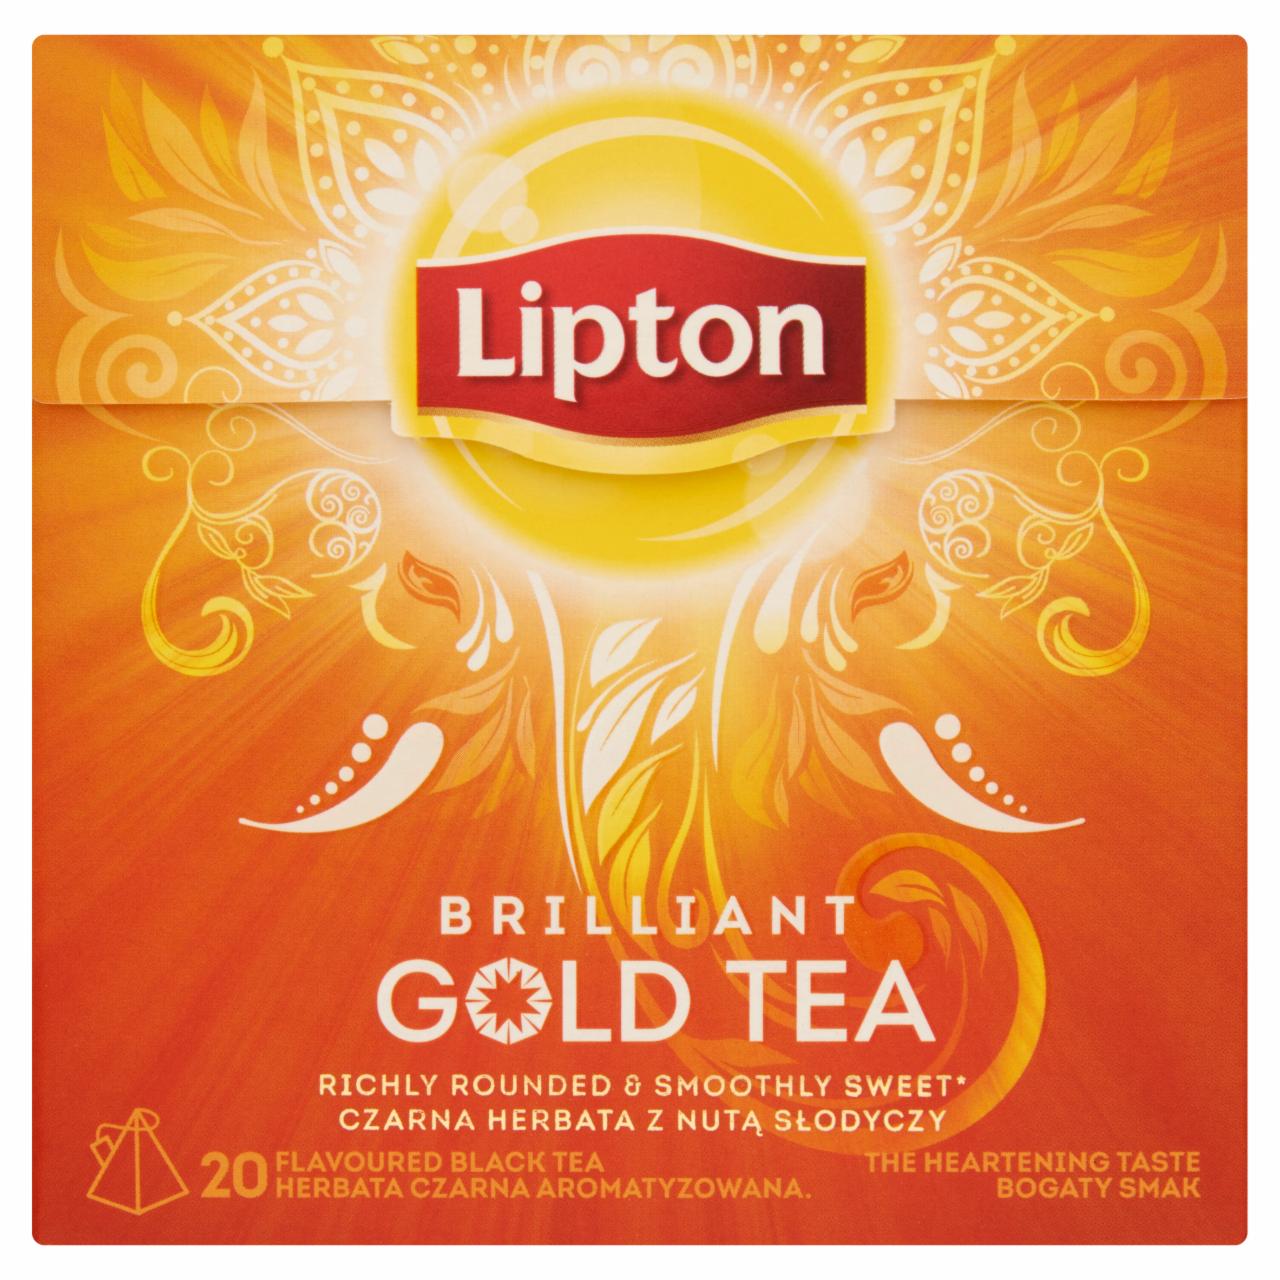 Képek - Lipton Brilliant Gold Tea ízesített fekete tea 20 piramis filter